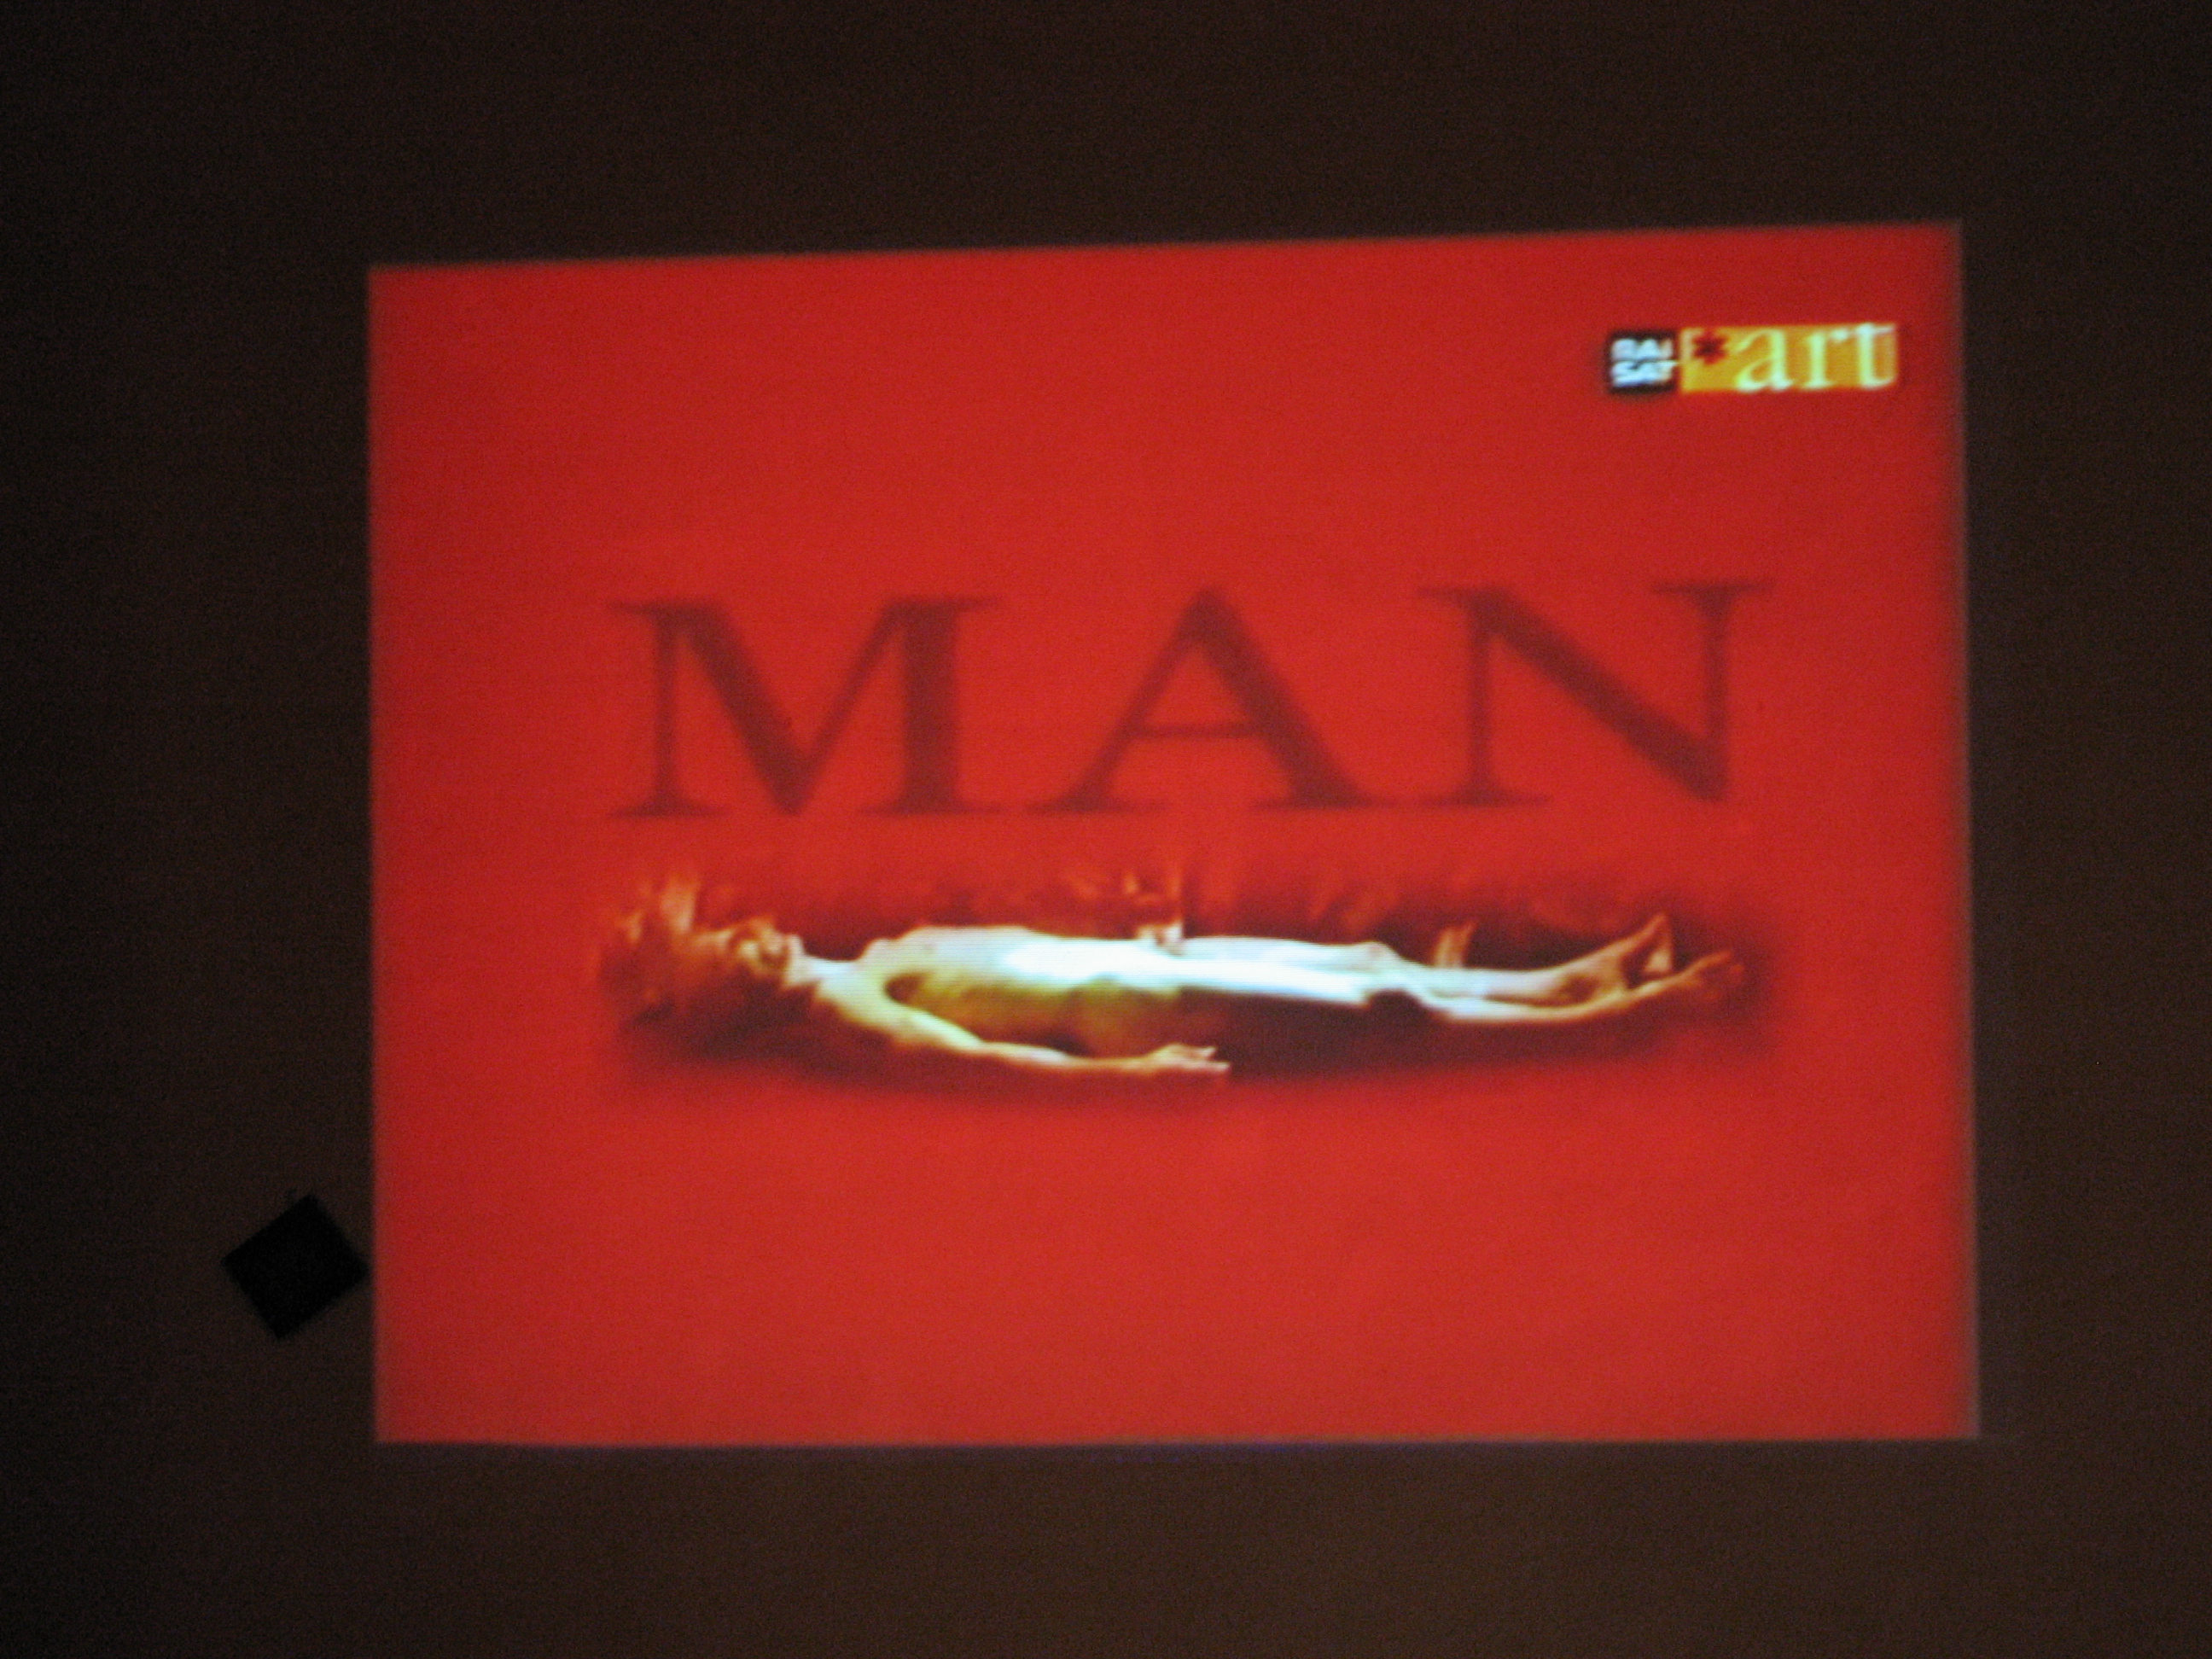 Fotogrammi del film "M is for Man Music Mozart" di Peter Greenaway